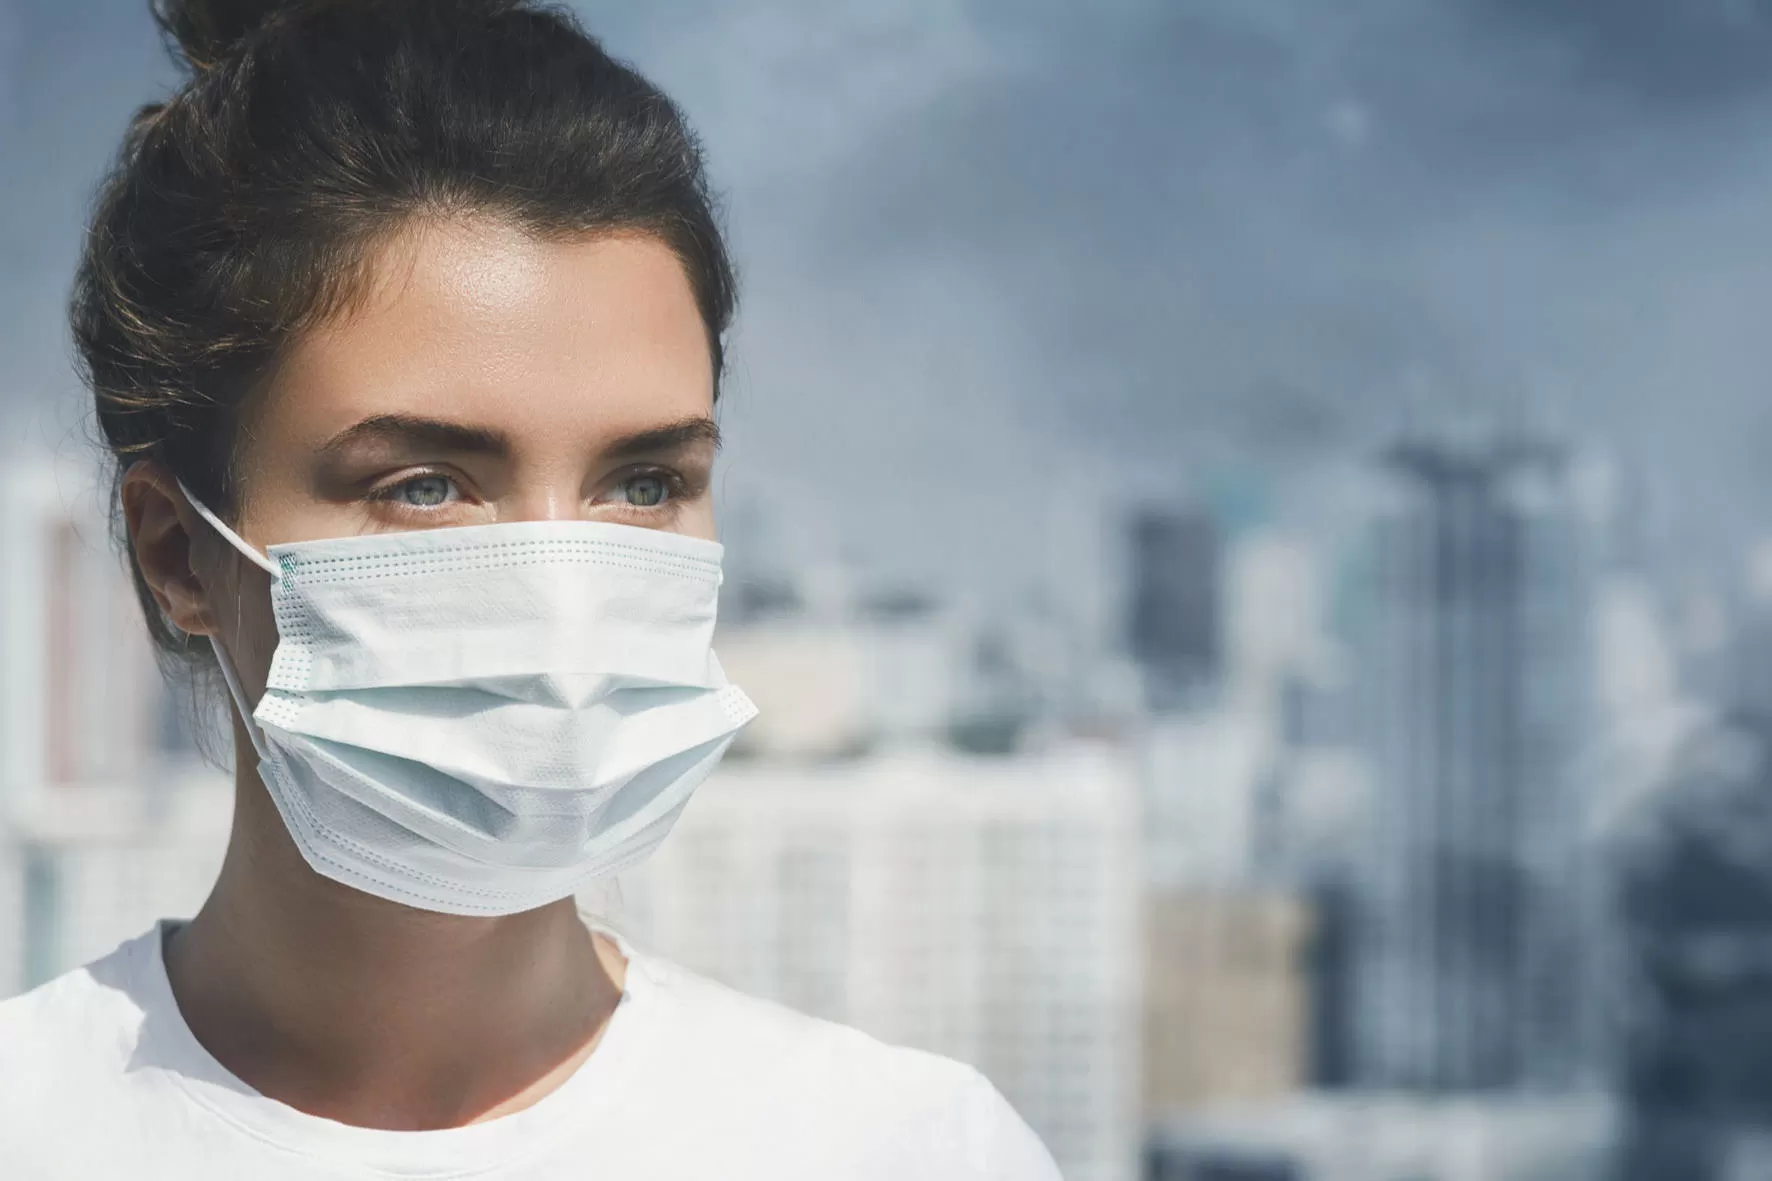 تاثیر آلودگی هوا بر پوست و روش های مراقبت از پوست در هوای آلوده